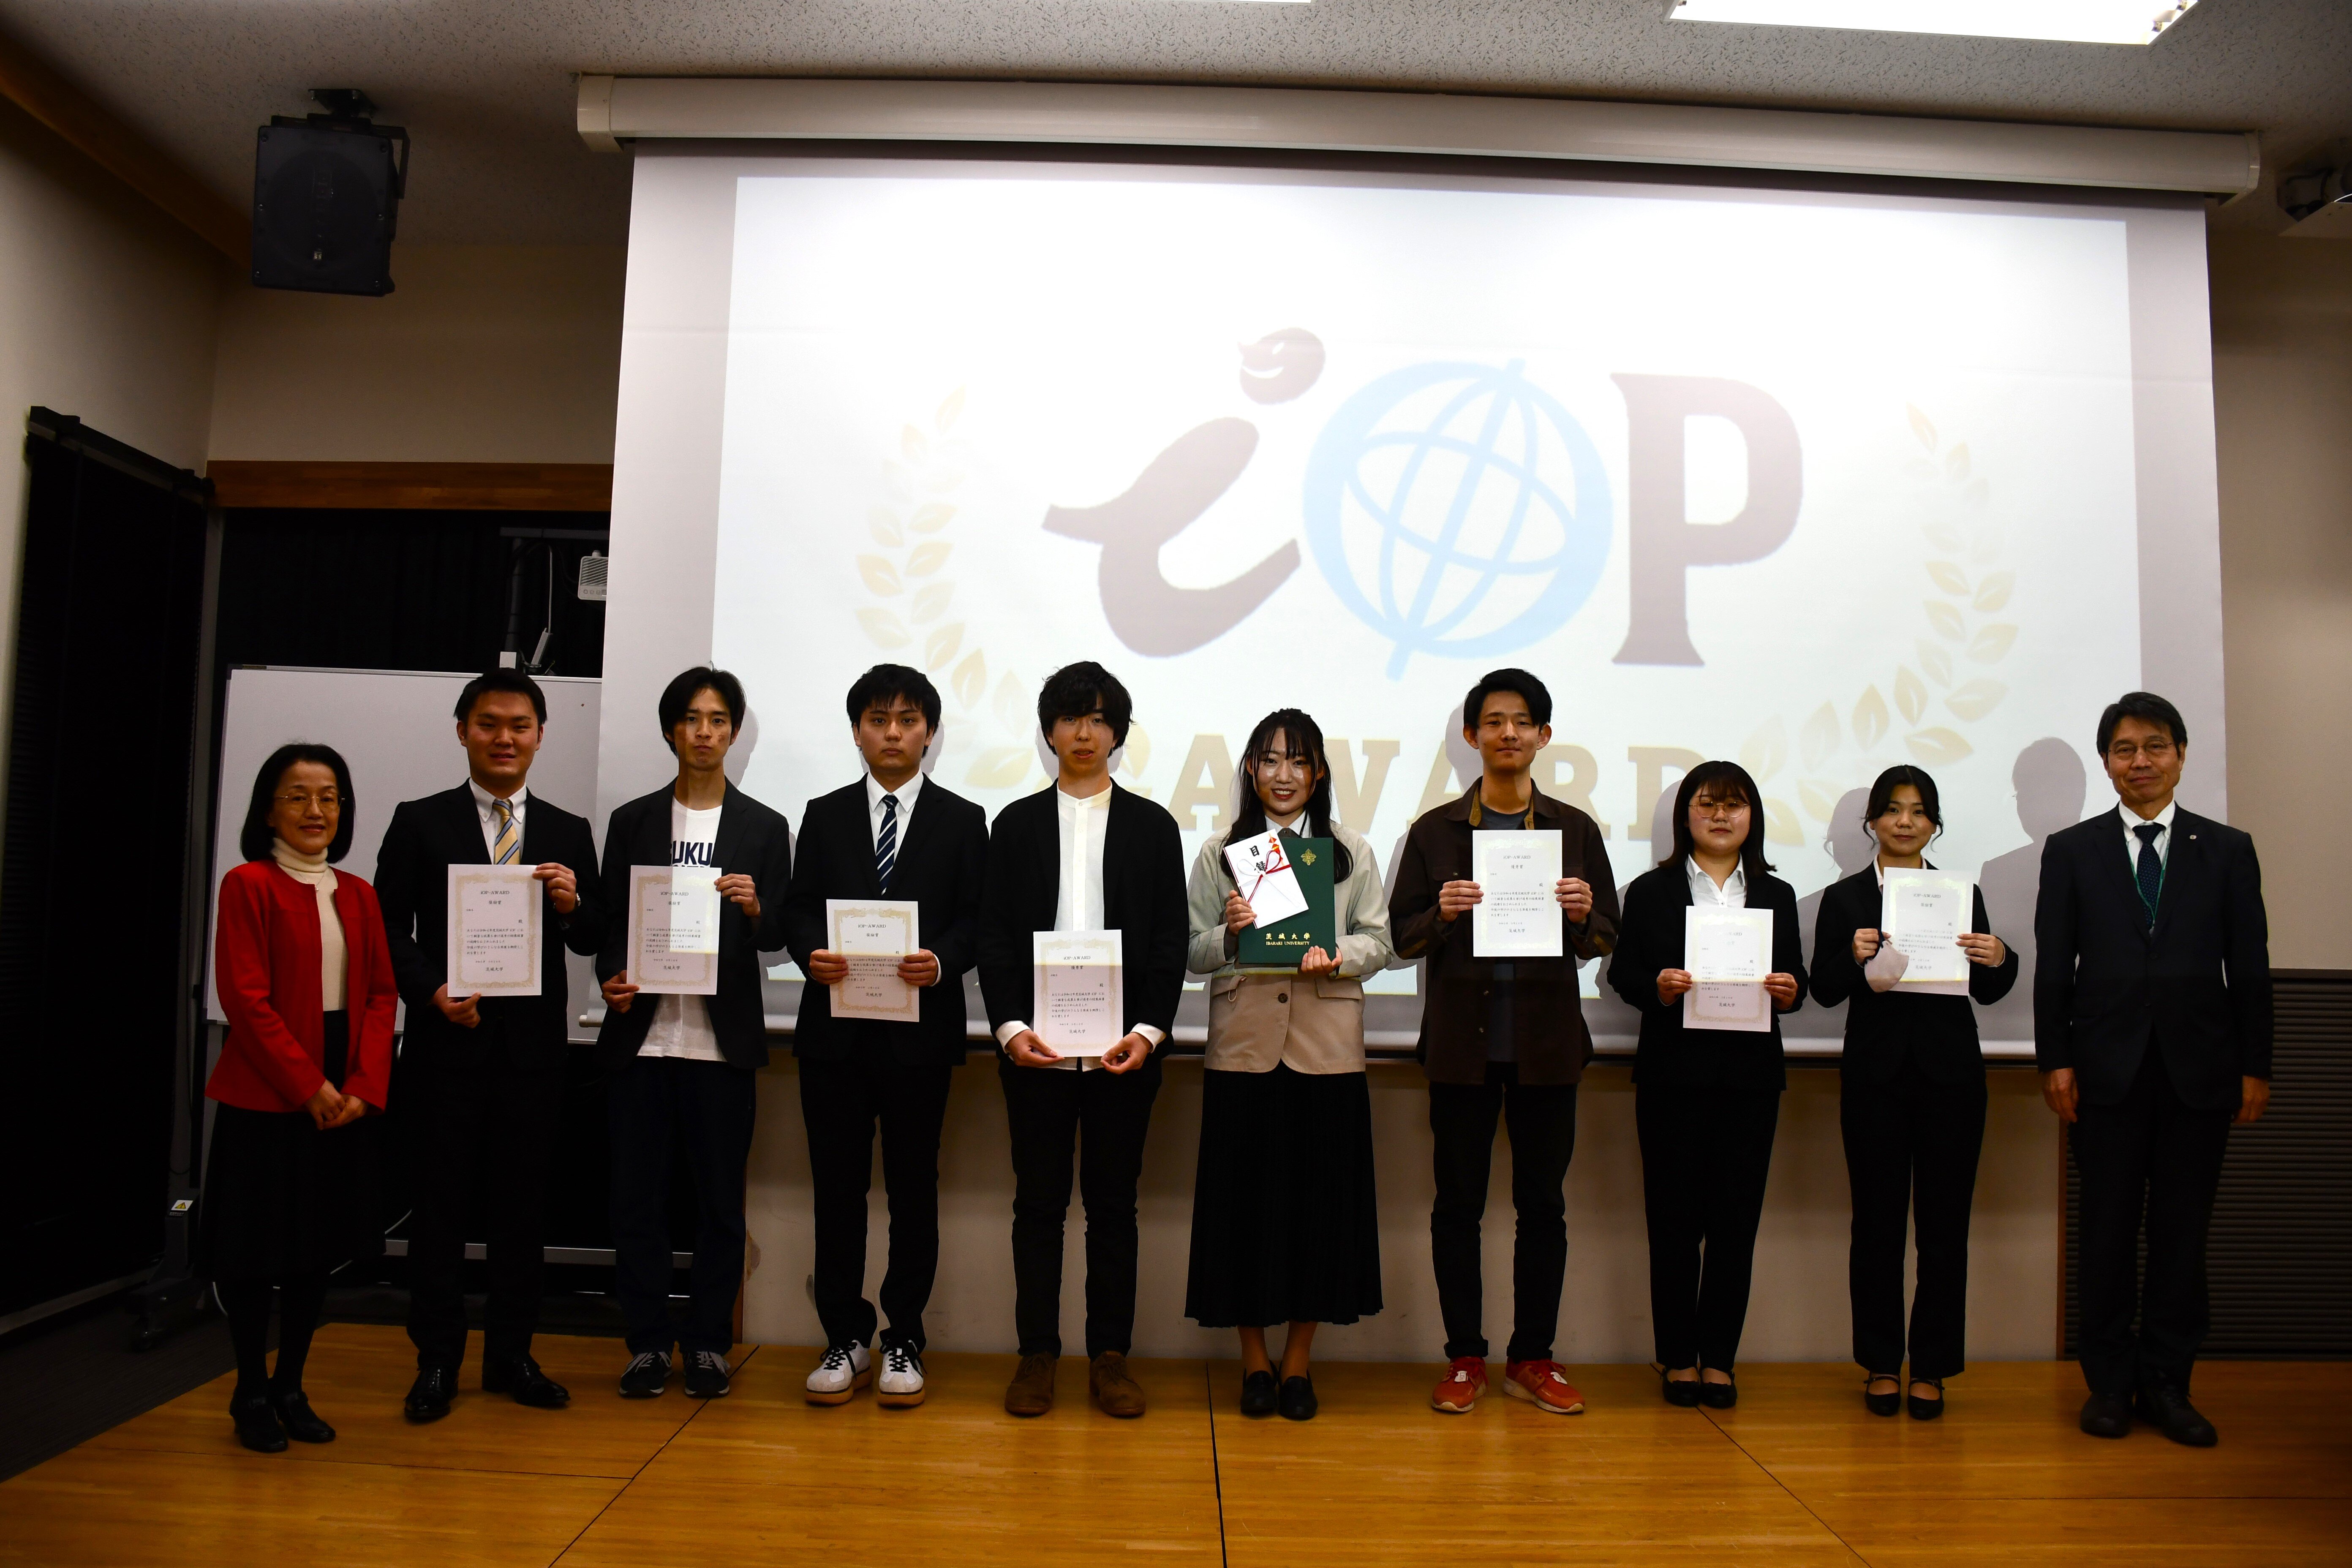 優れた学外活動を表彰する「iOP-AWARD」<br>―教育学部・藤原さんが最優秀賞